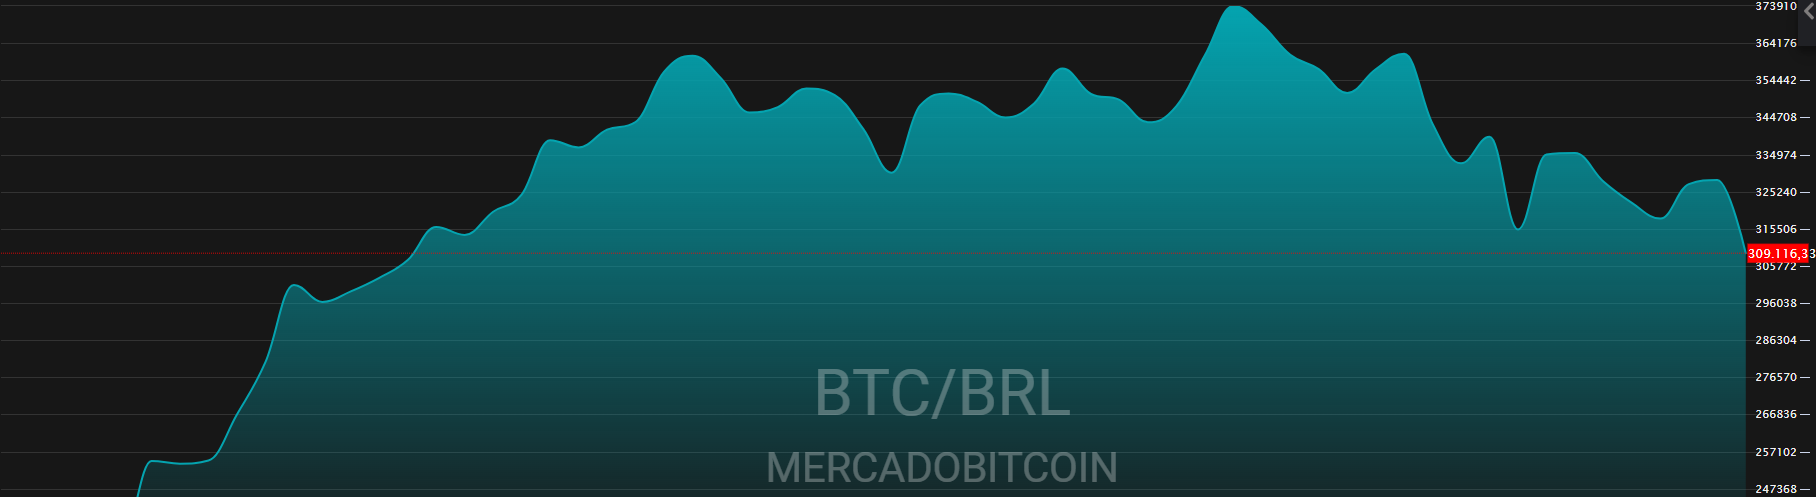 Fonte: TradeMap/Mercado Bitcoin